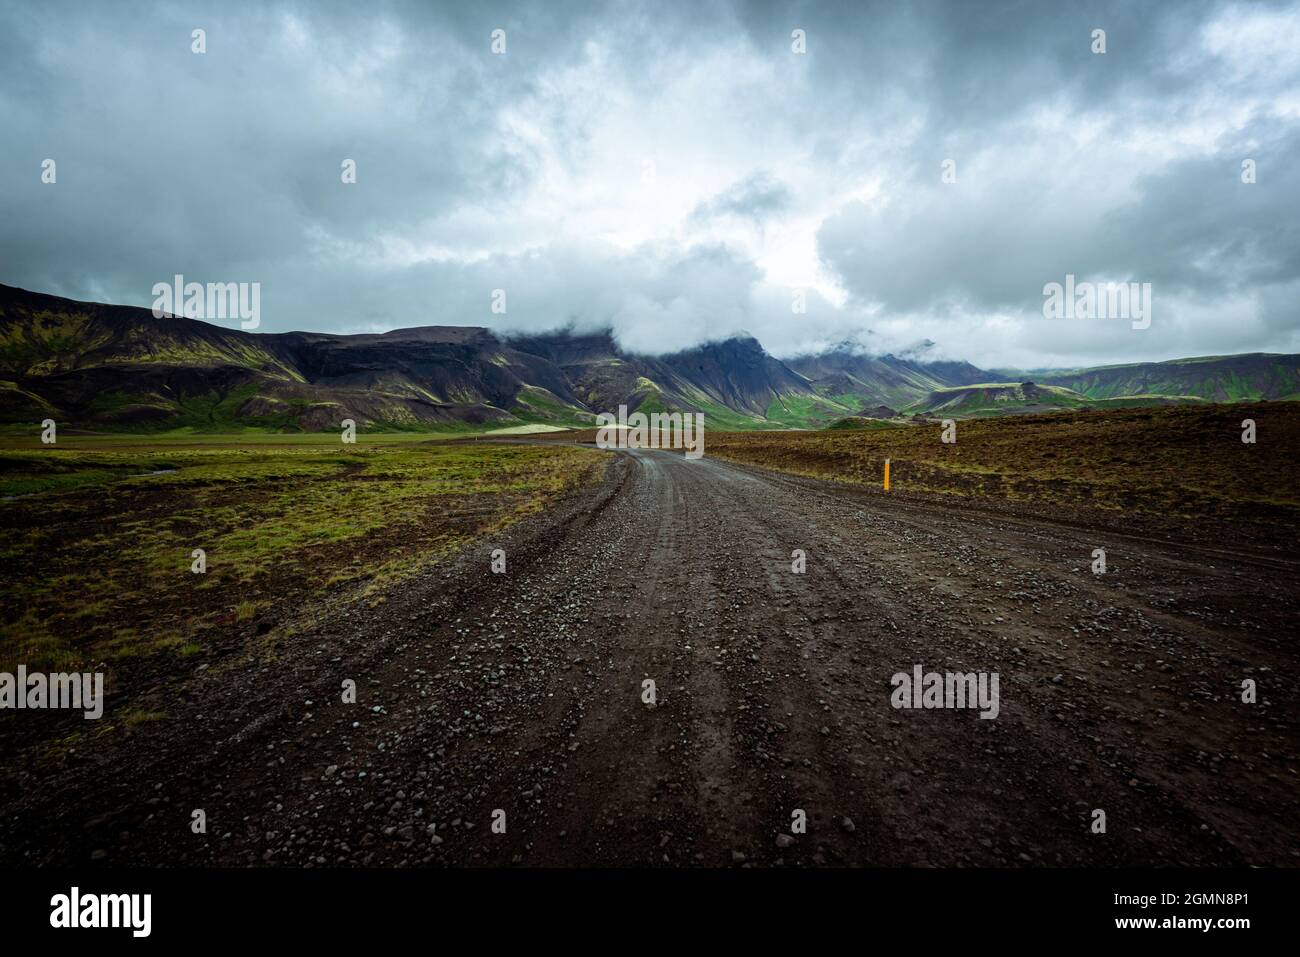 Conduciendo por una carretera sin pavimentar en verano en Islandia, el paisaje de las montañas, cielo moody con nubes oscuras Foto de stock